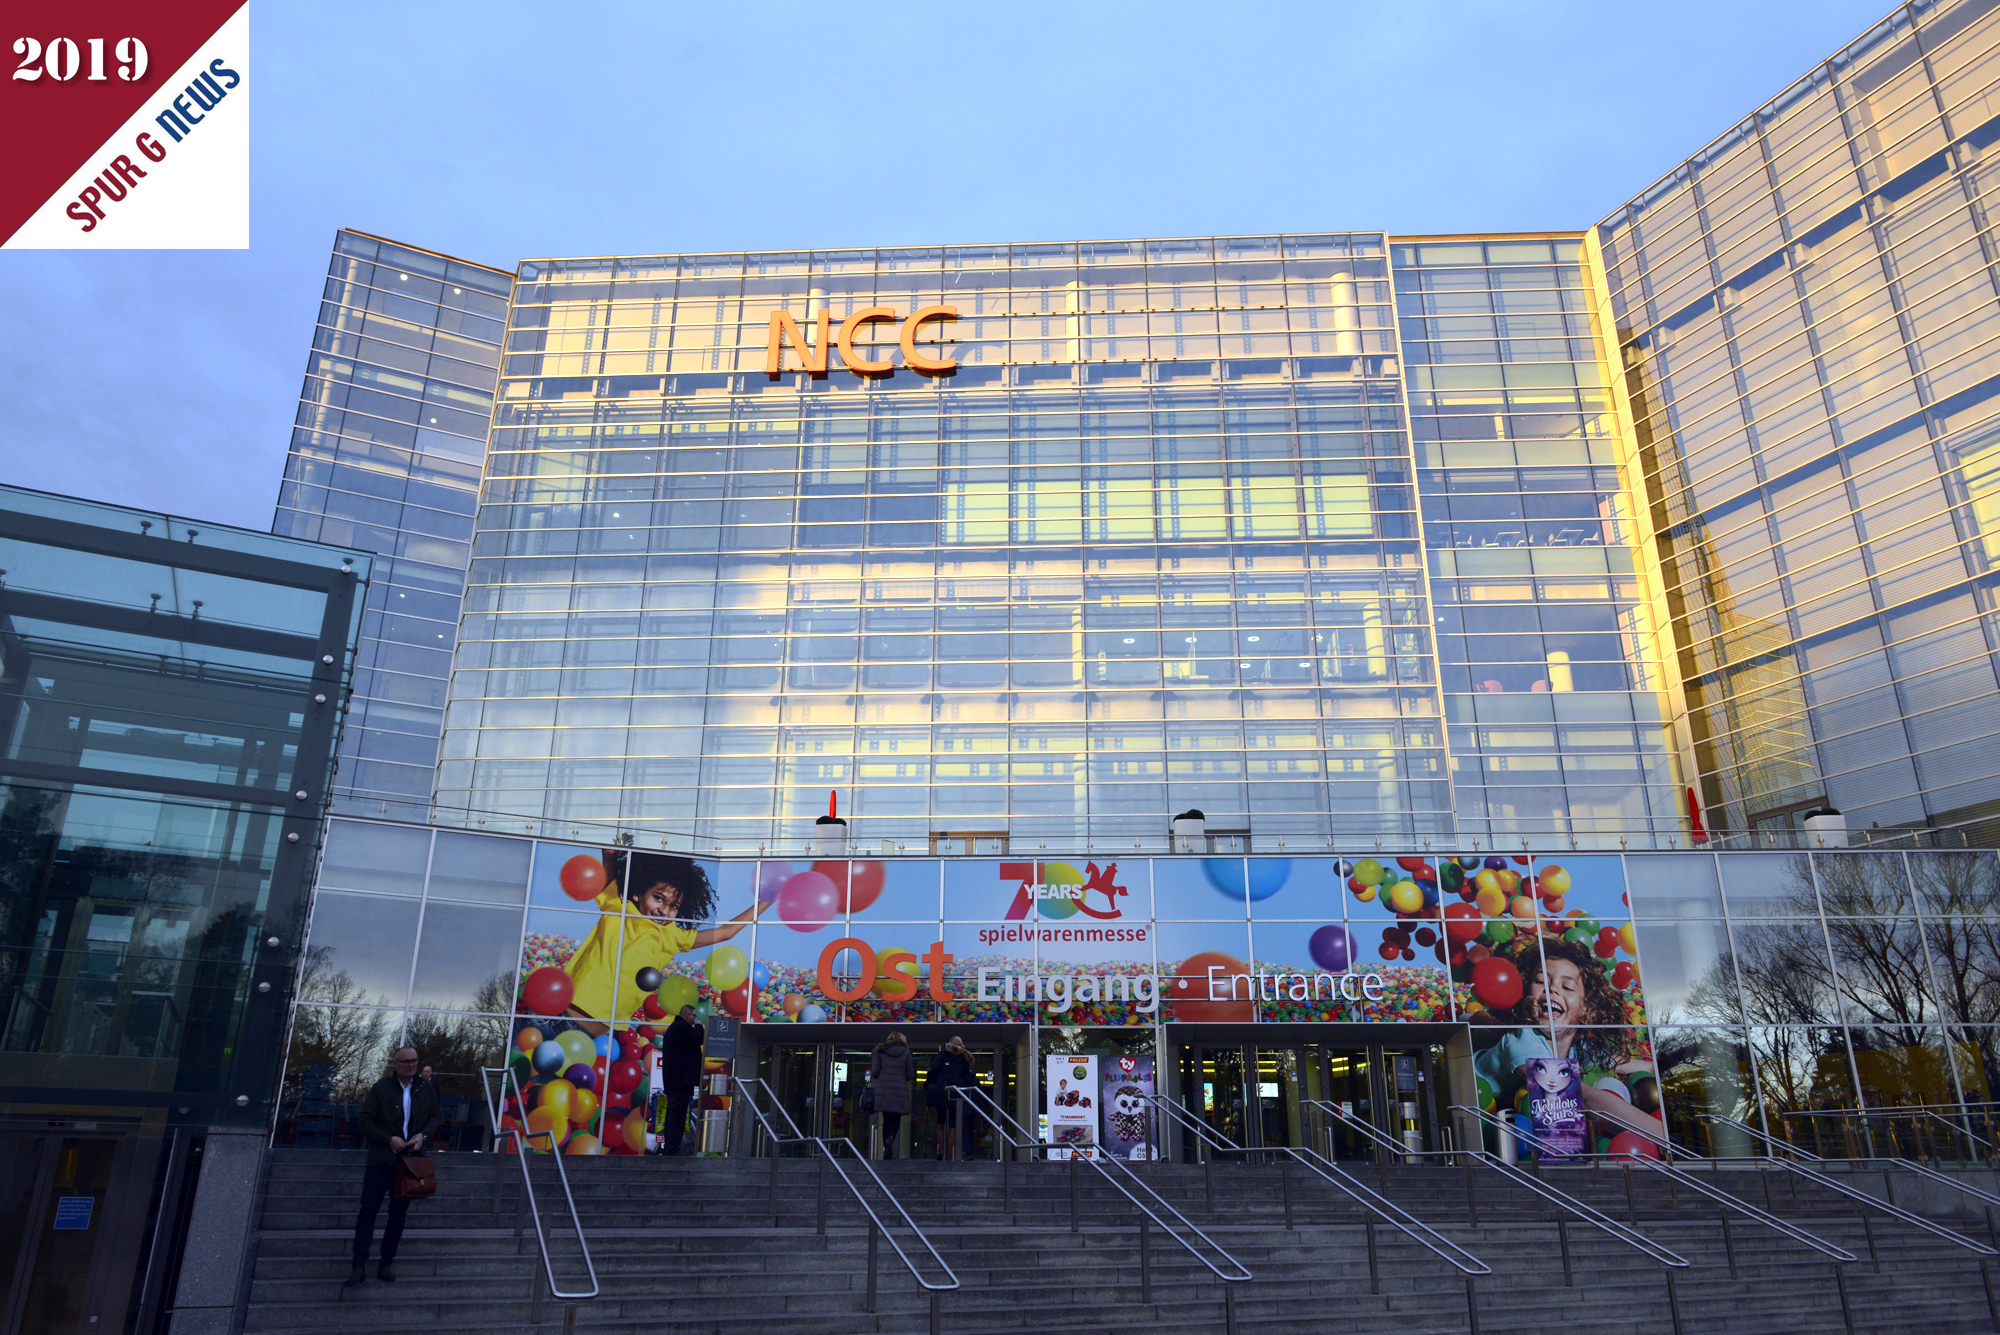 Heute, Mittwoch,30. Januar 2019, sah der Eingang zur 70. spielwarenmesse am NCC Ost so aus: 